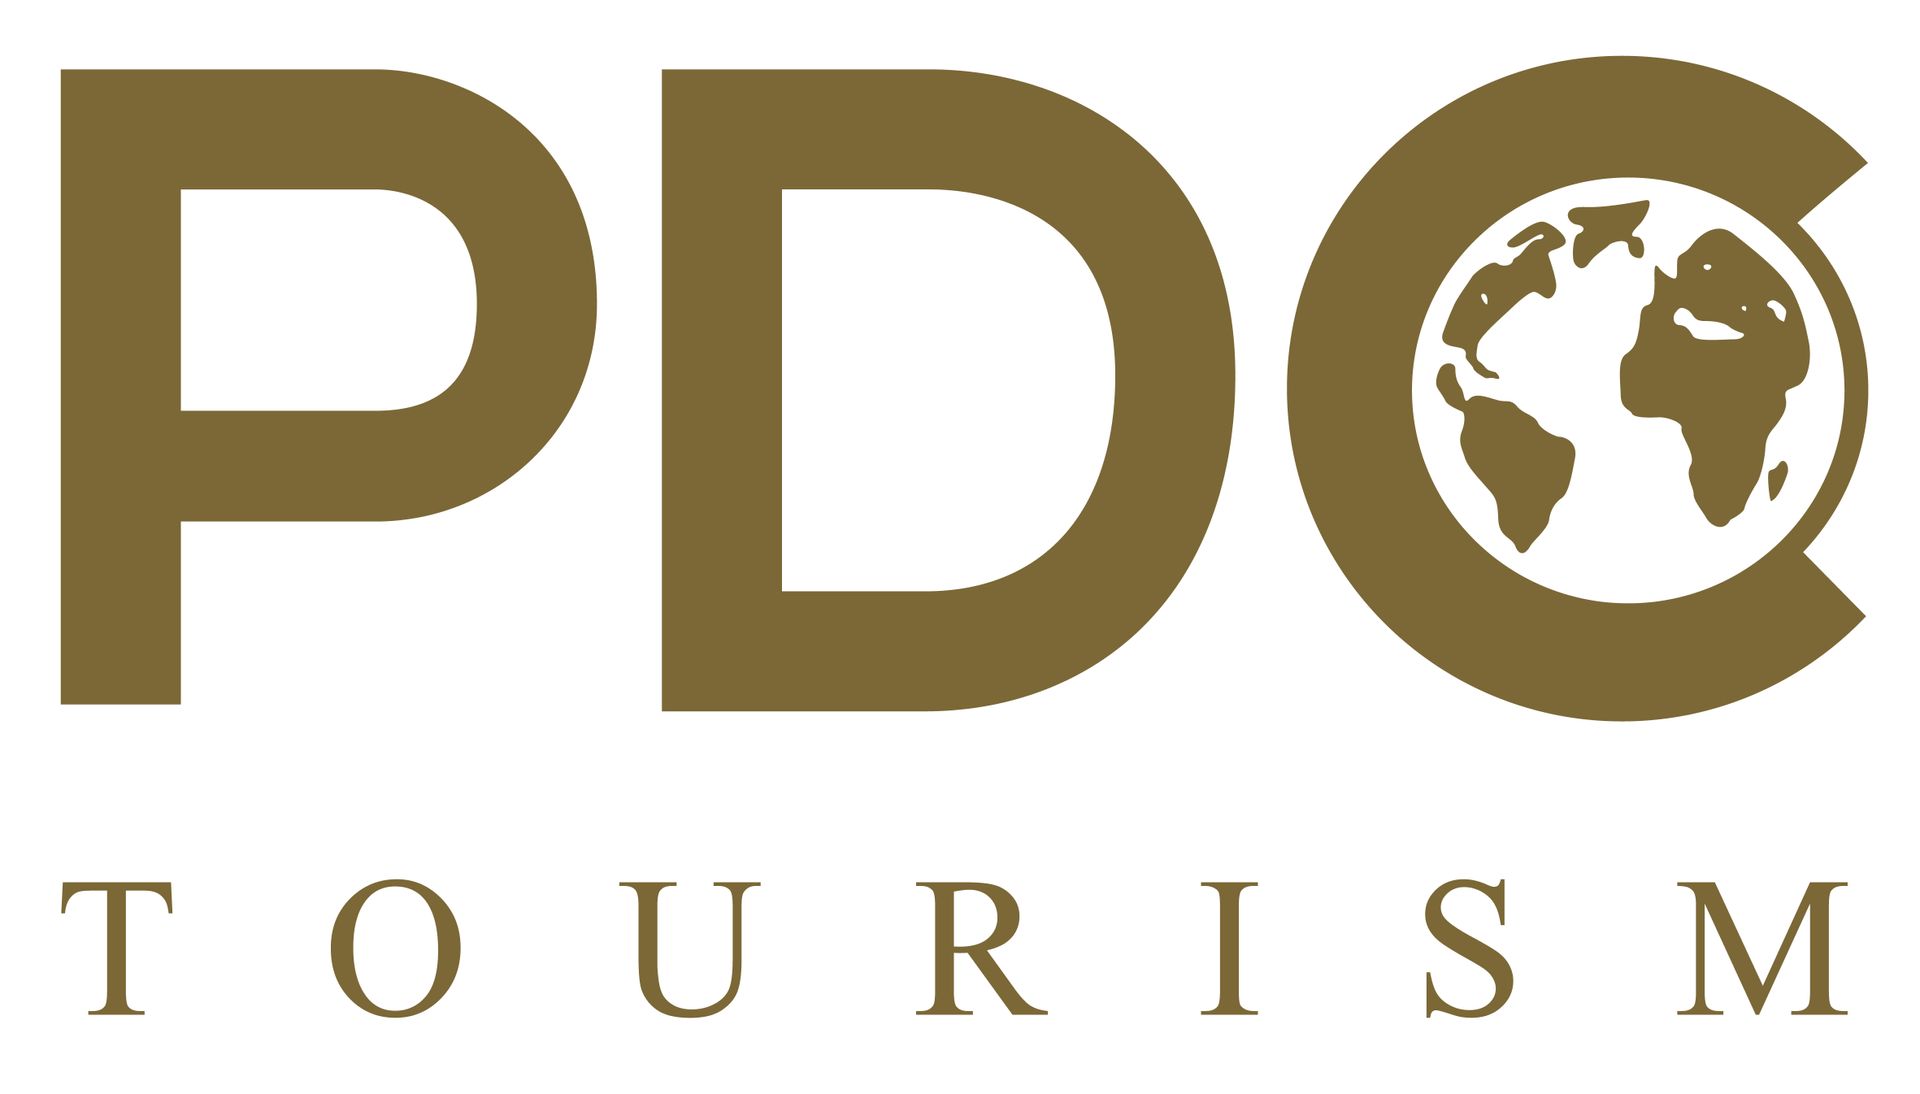 PDC Tourism, Reise buchen, Reiseveranstalter, Erlebnisreisen